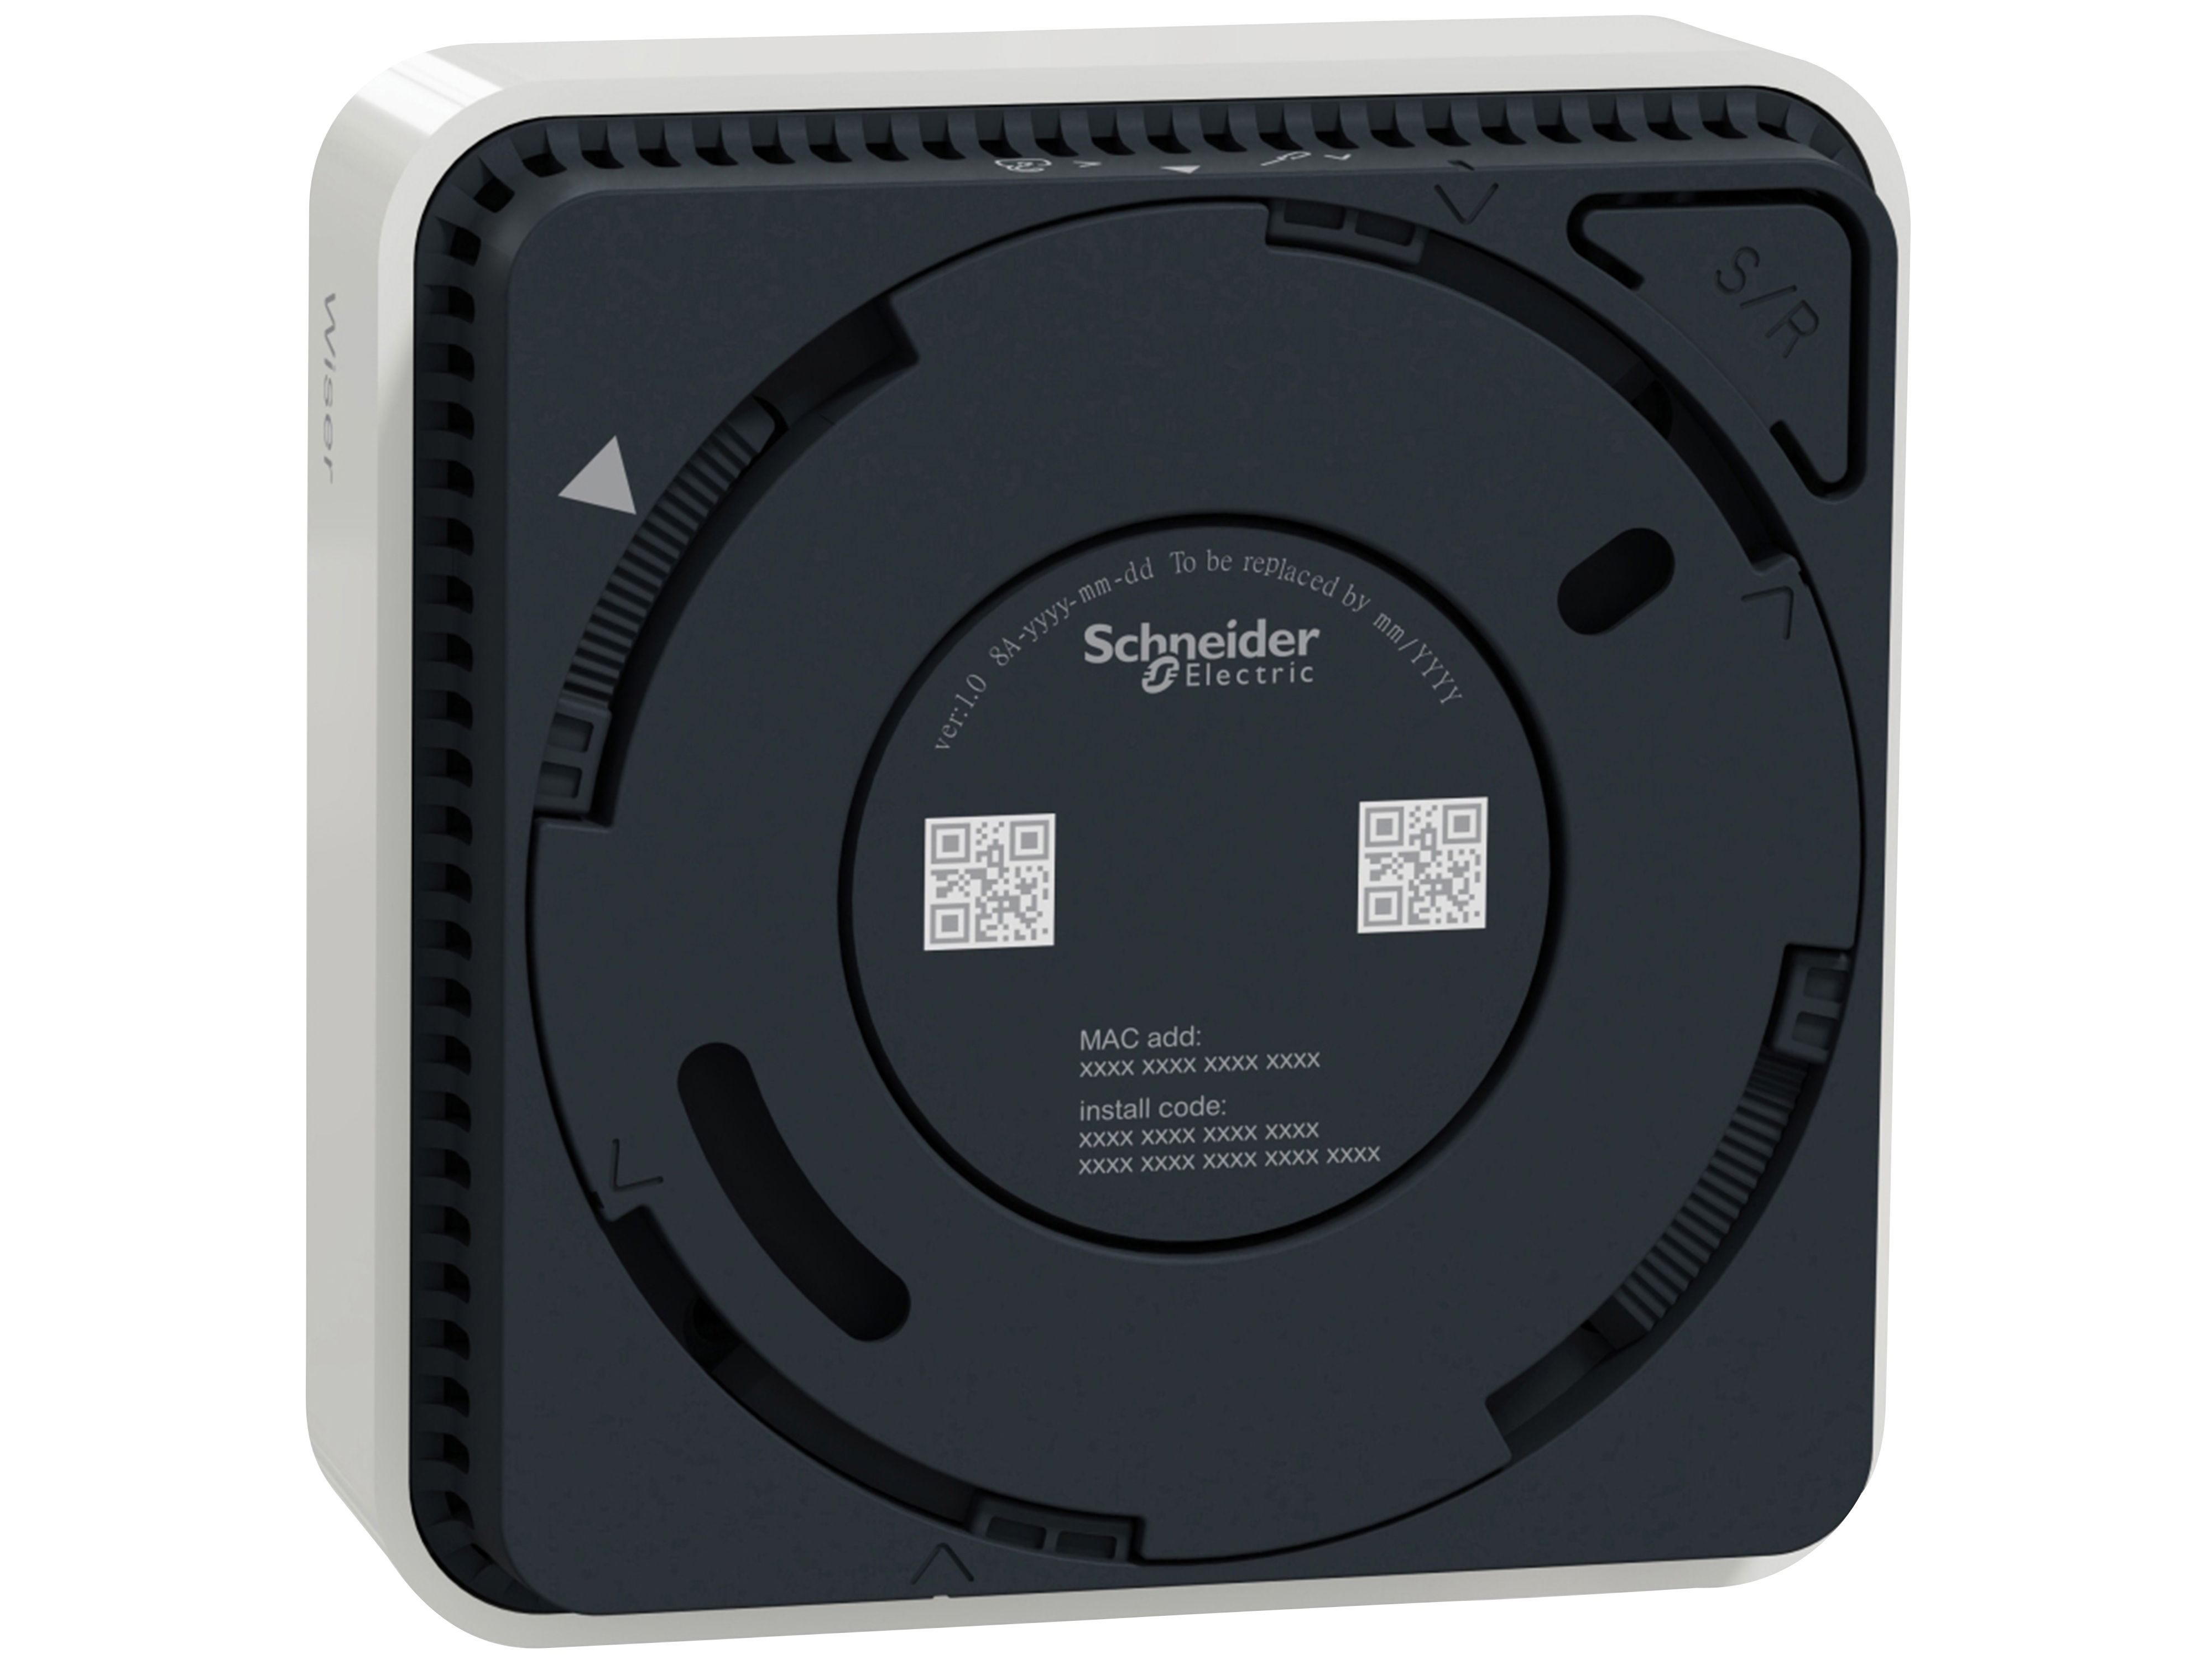 Stück Rauchmelder Smart Home Wiser 3 Rauchmelder SCHNEIDER CCT599002,